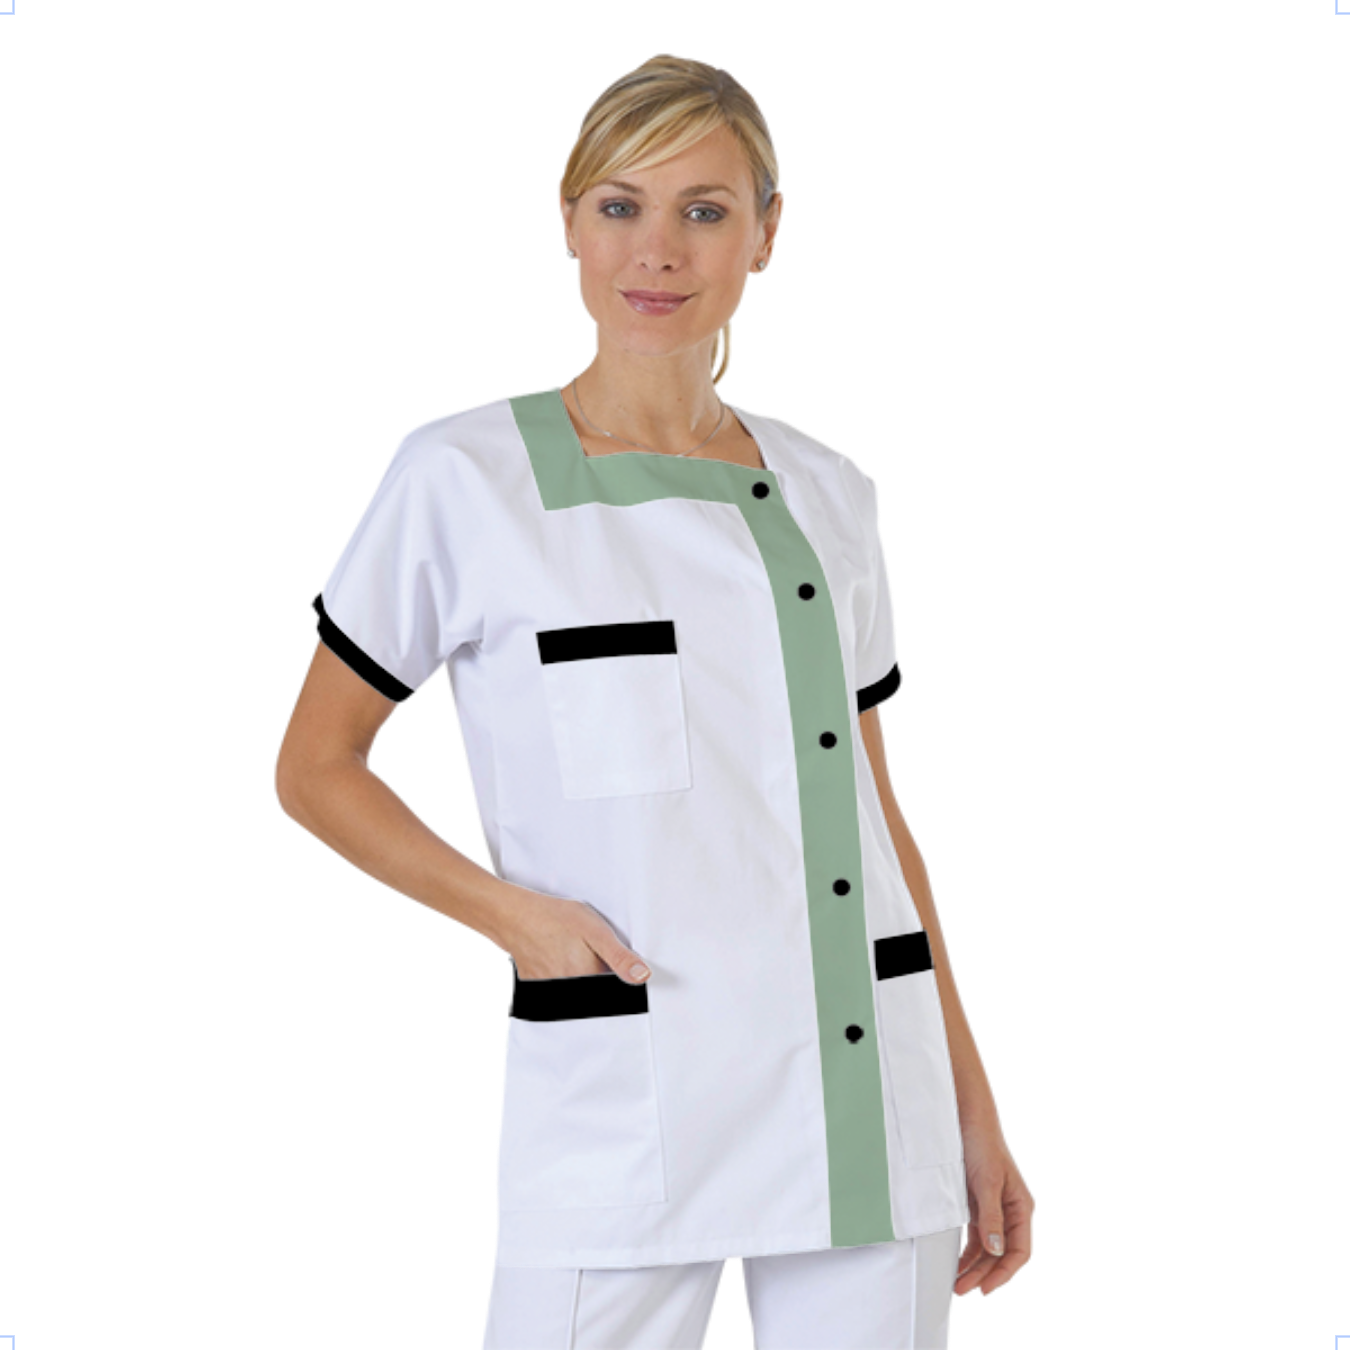 blouse-medicale-col-carre-a-personnaliser acheté - par Manon - le 29-10-2019